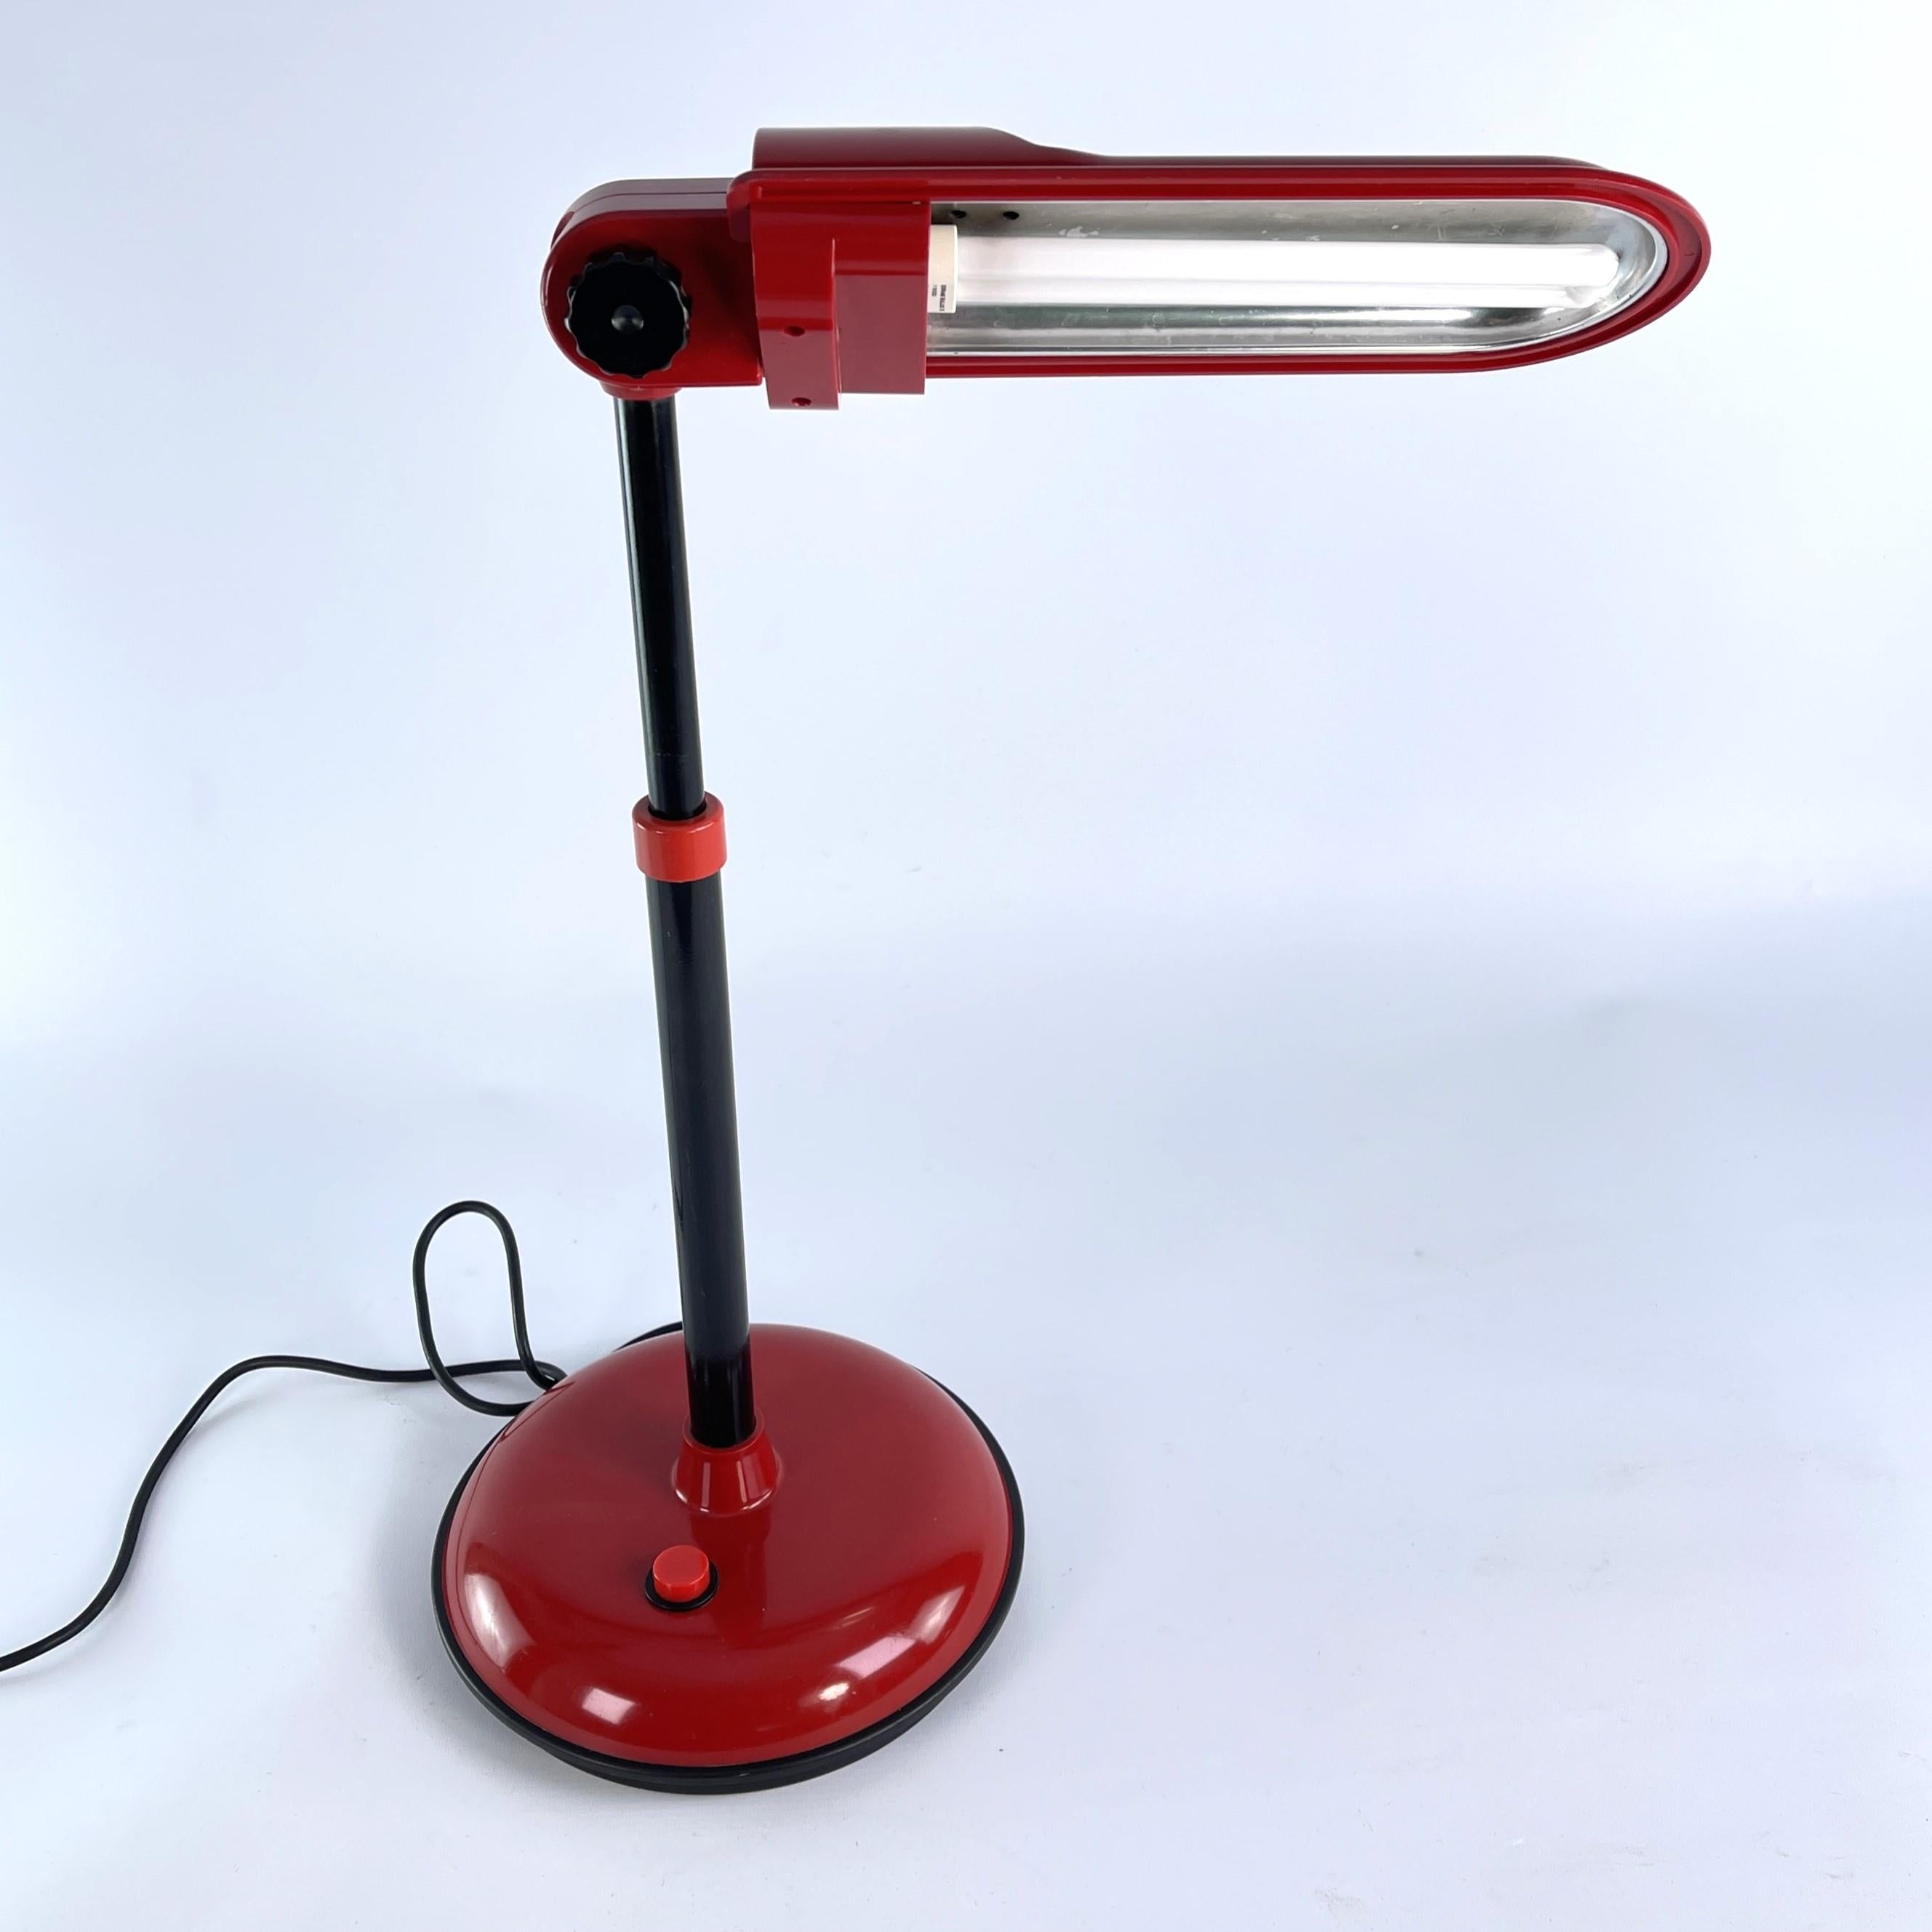 Lampe à poser MAZDA rouge

Cette lampe de table rare et originale de la célèbre société MAZDA impressionne par son design simple et fonctionnel. La lampe de travail est réglable en hauteur et fournit une lumière agréable.

L'article nettoyé  pèse